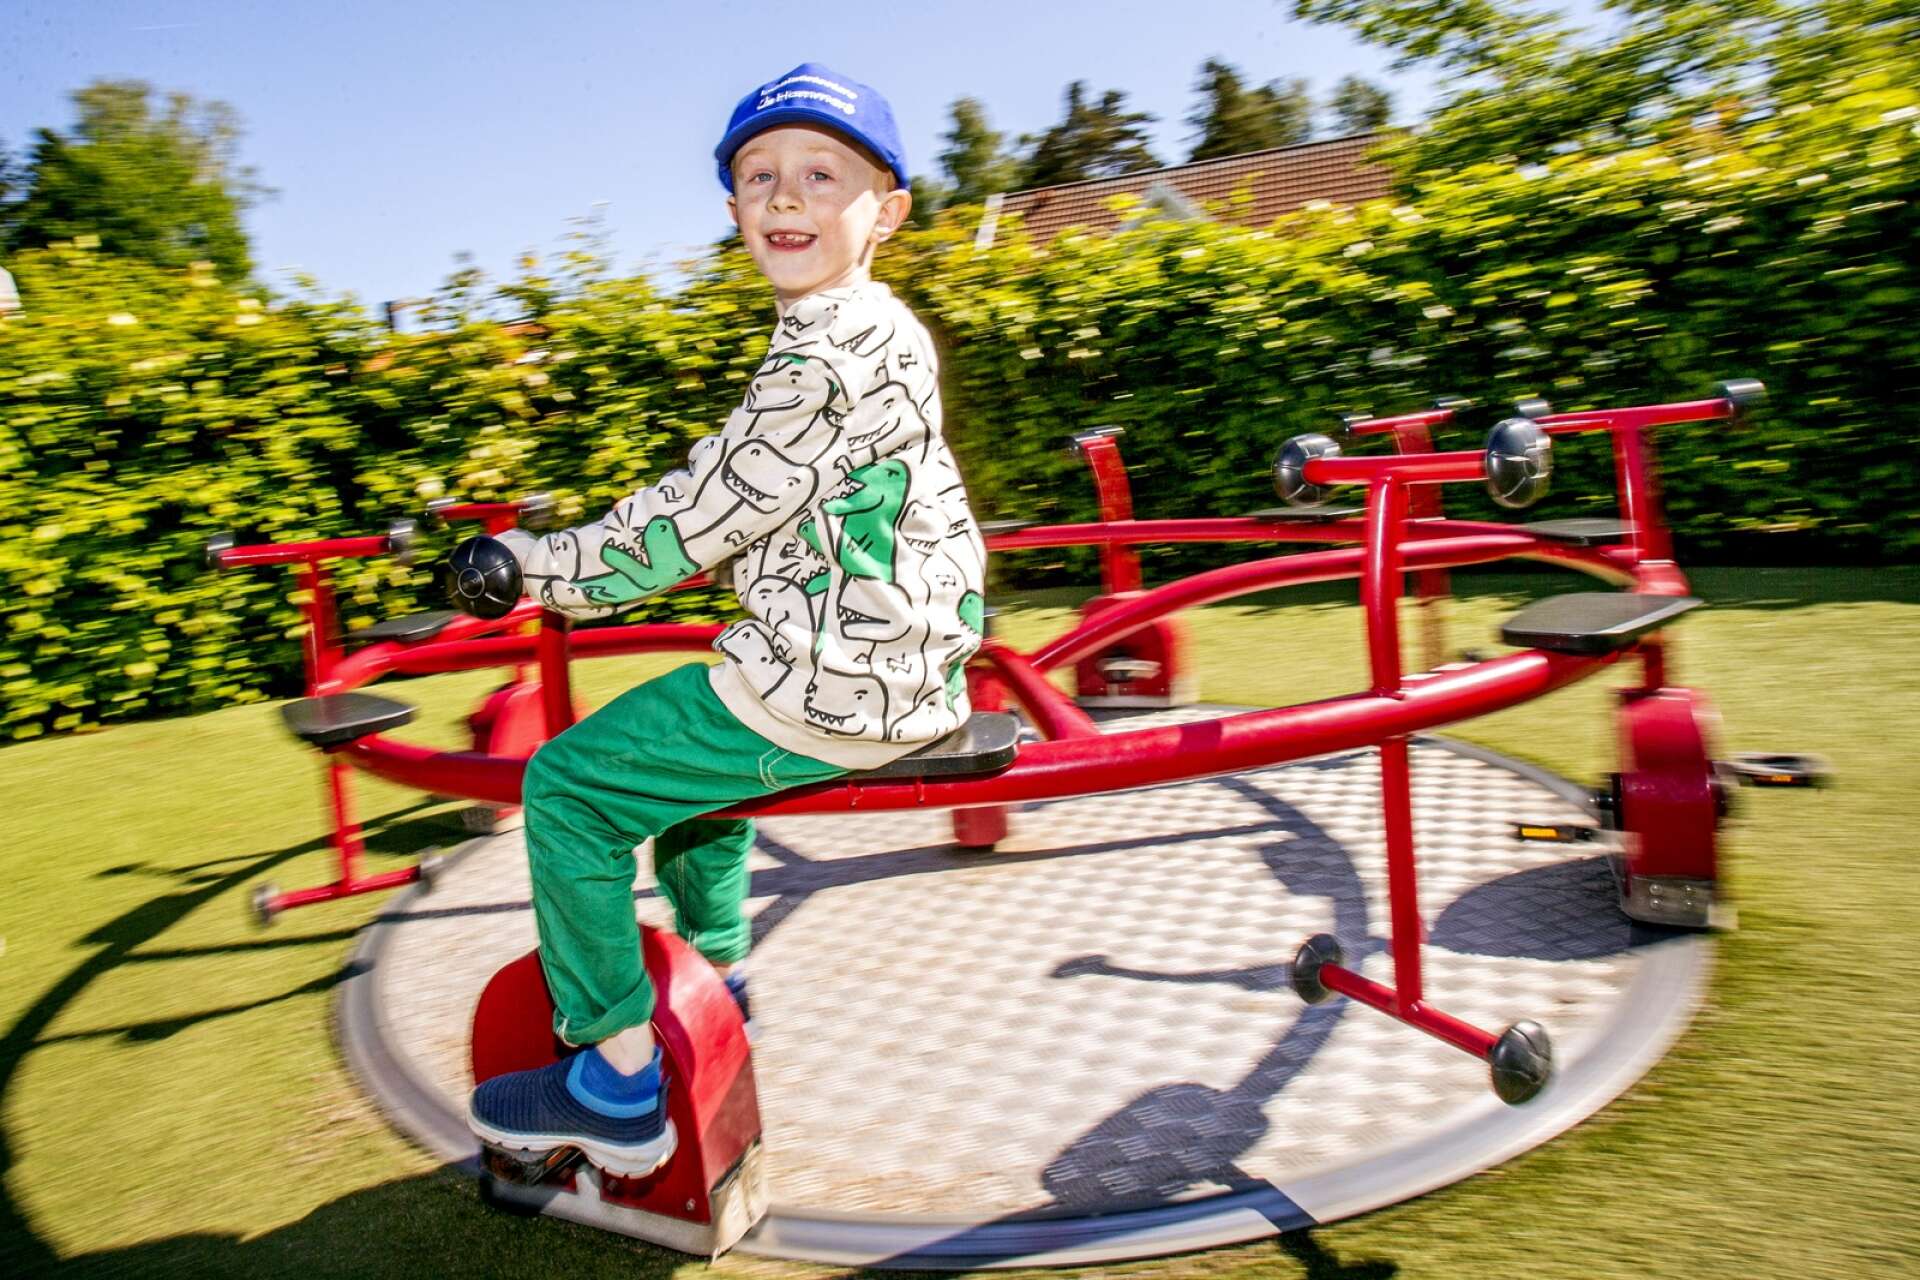 Nils Stjärnhem ska betygsätta Hammarö kommuns lekplatser under sommaren. Här testar han cykelkarusellen i Jonsbolsparken, som får fem fingrar.